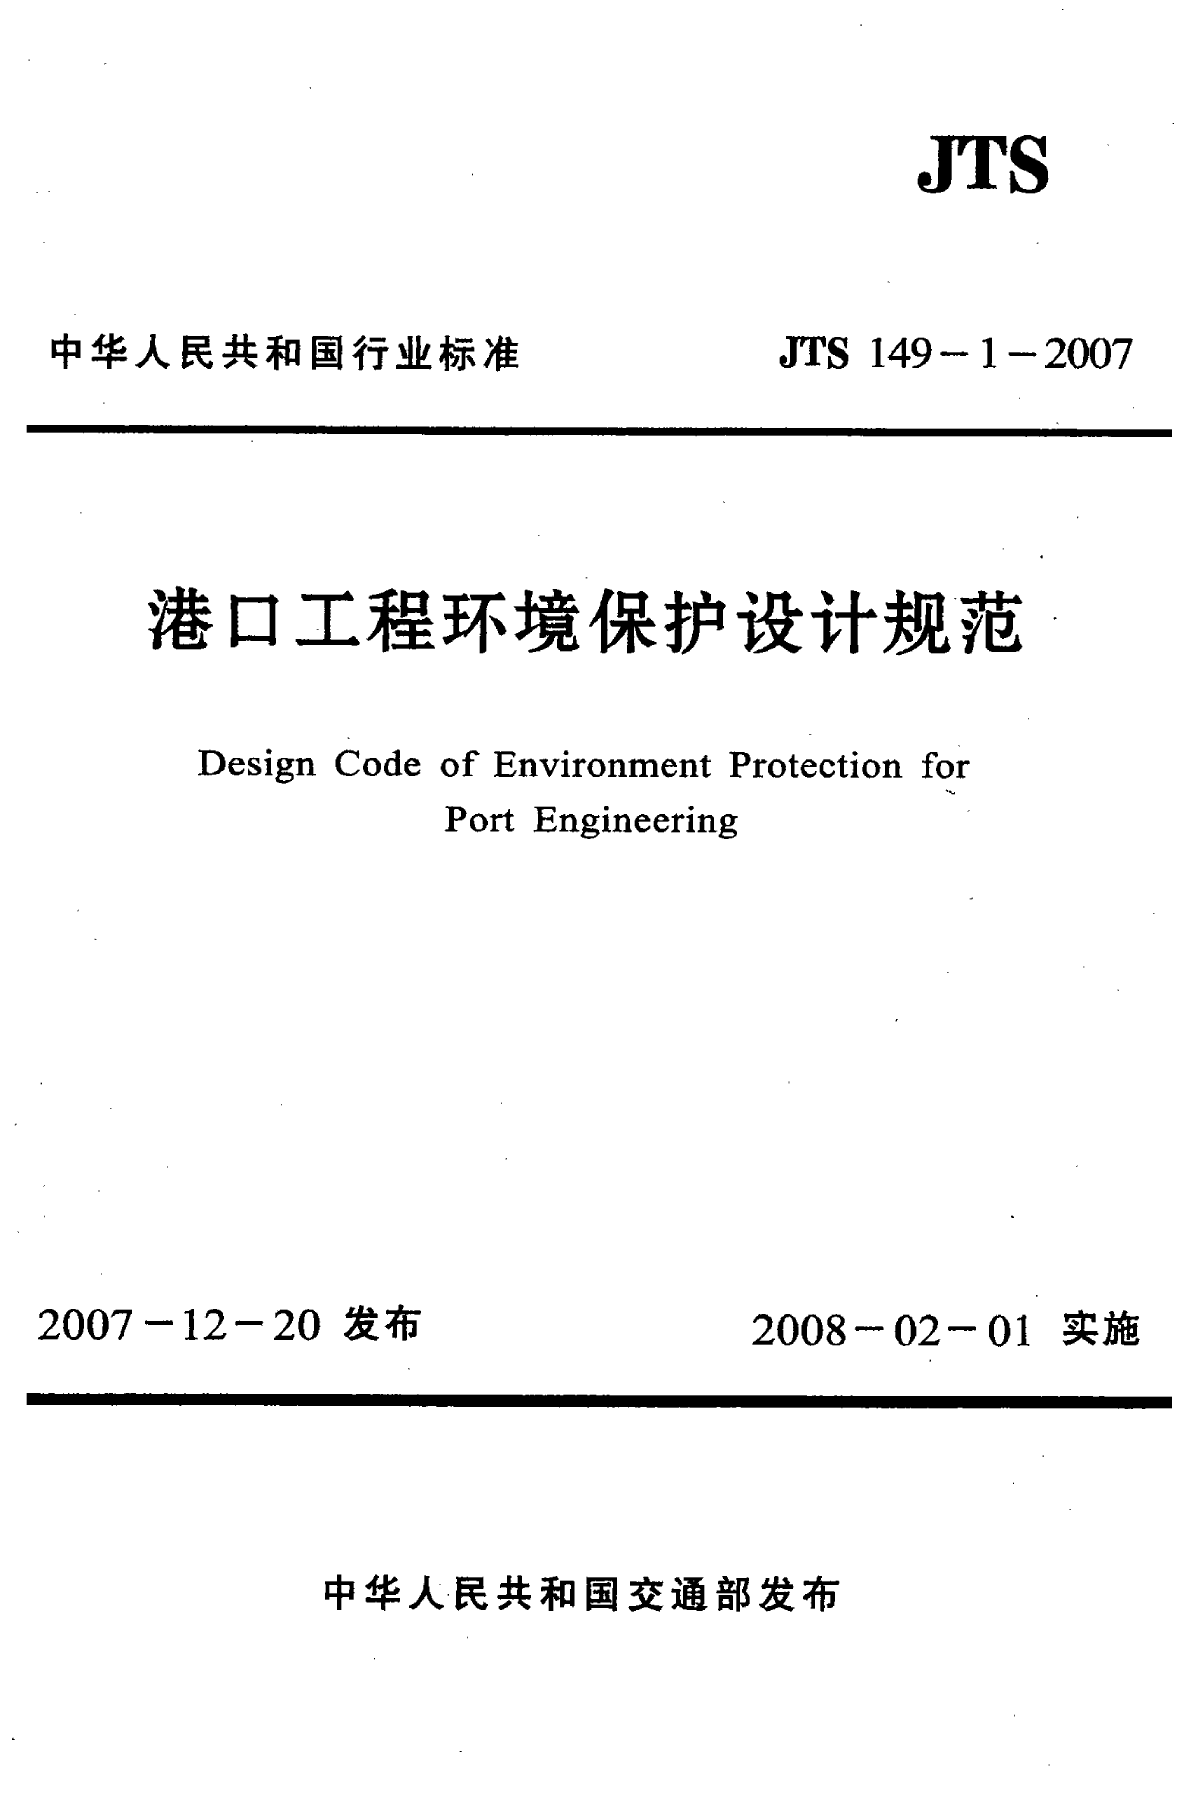 《港口工程环境保护设计规范》(JTS149-1-2007)-图一